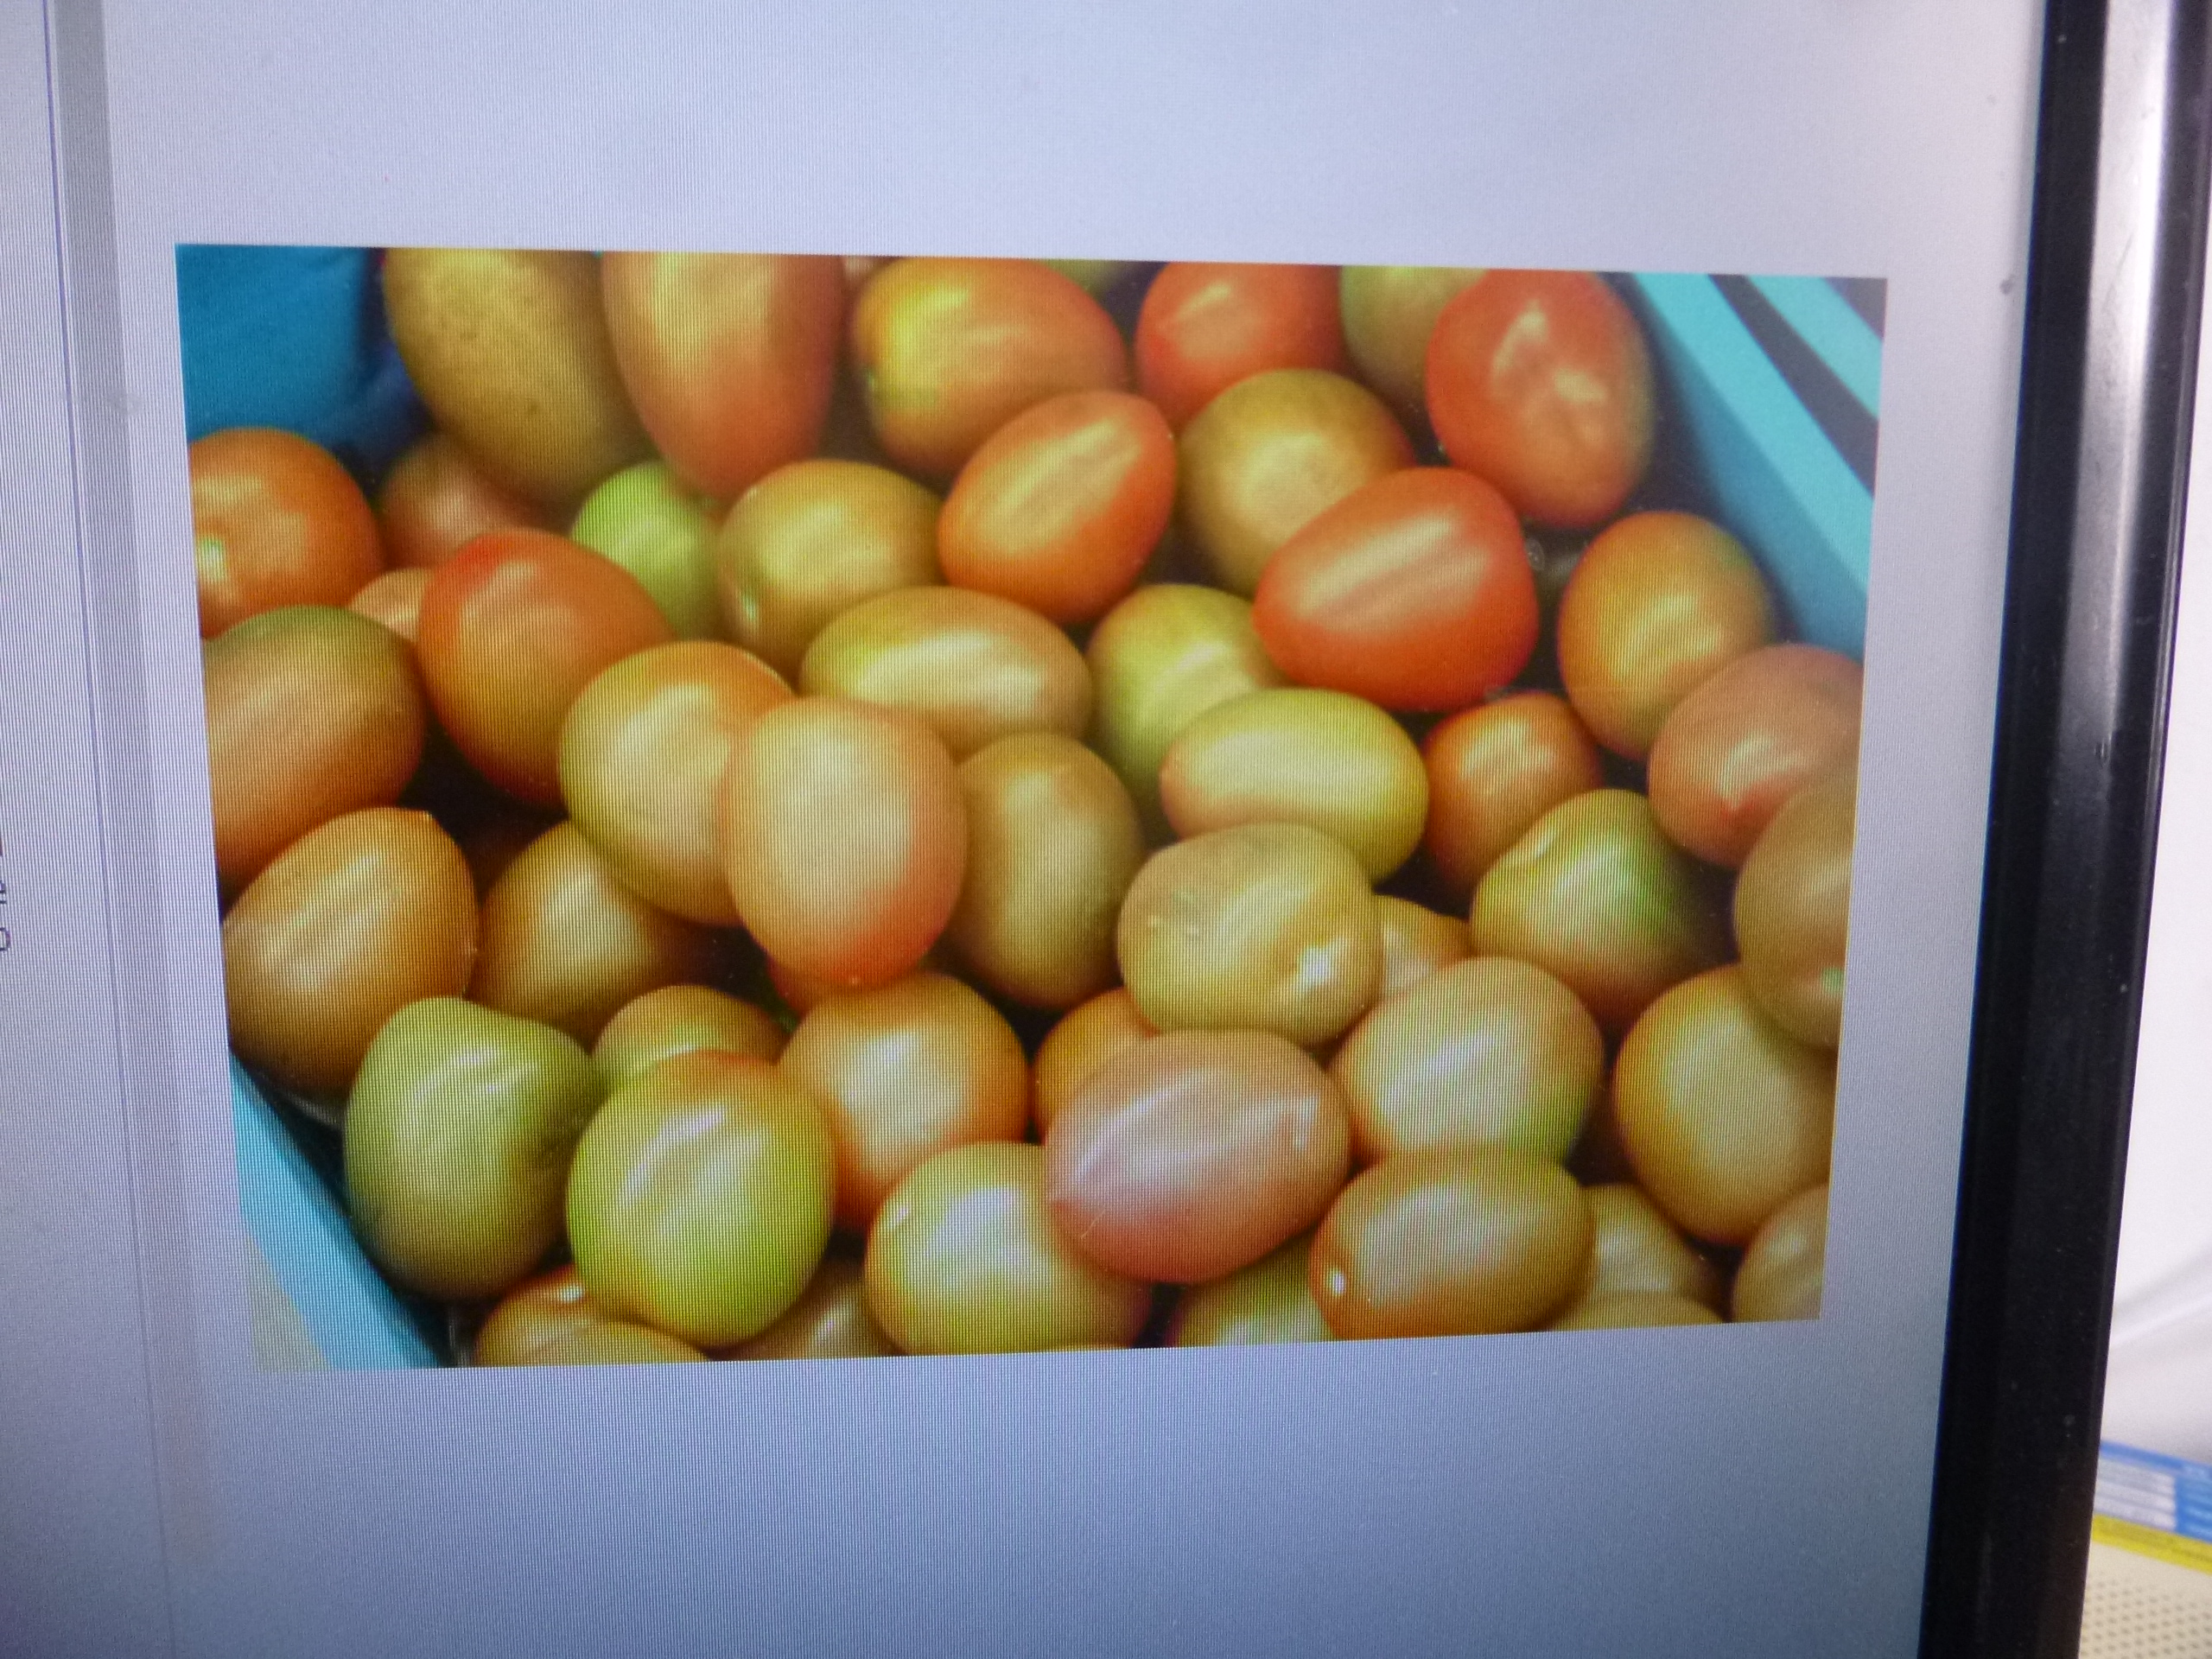 Productores de tomate poblanos exportaron 300 toneladas a Dallas Texas